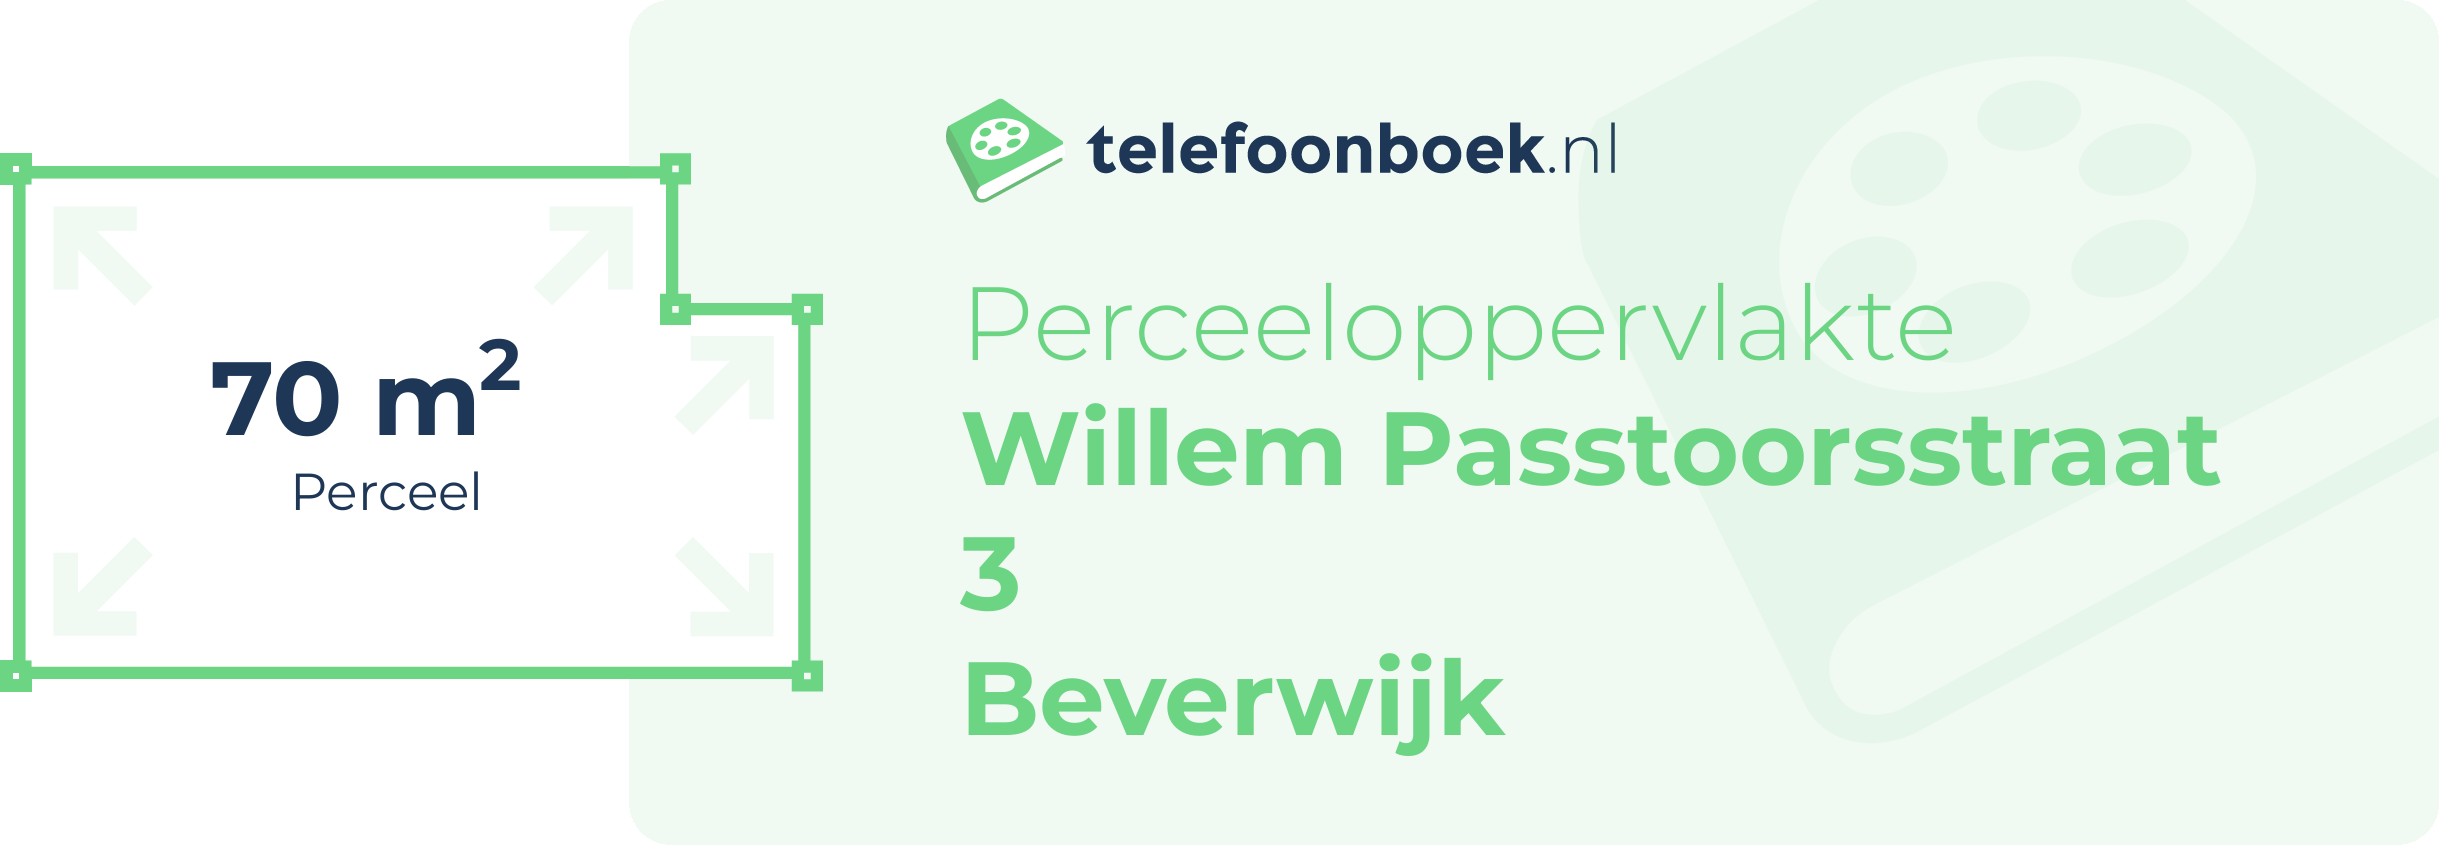 Perceeloppervlakte Willem Passtoorsstraat 3 Beverwijk